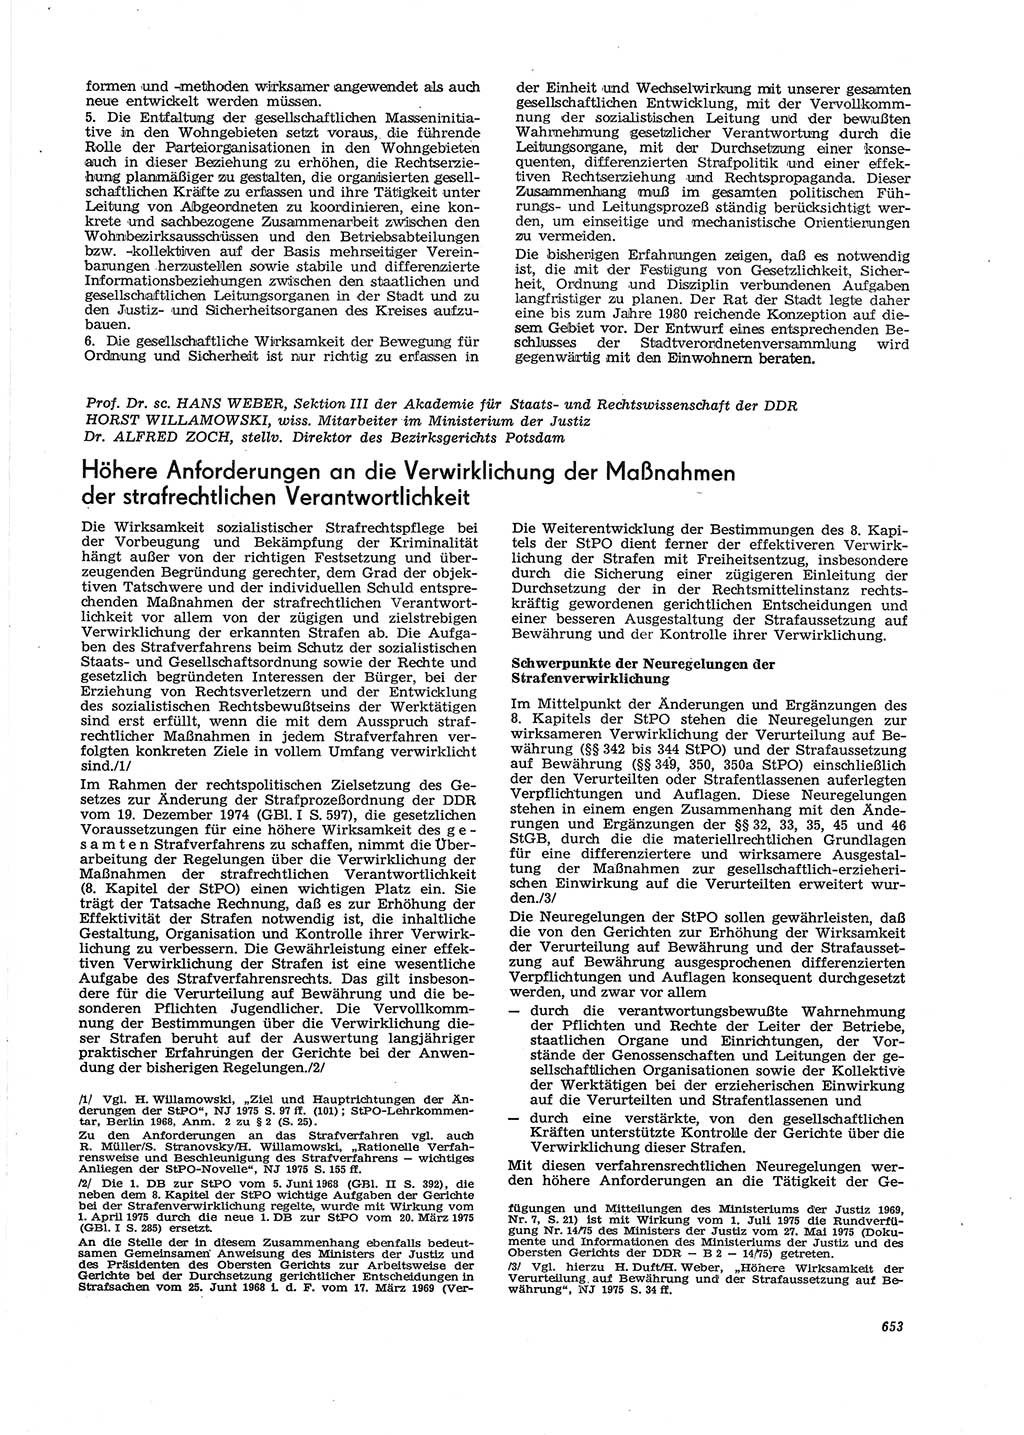 Neue Justiz (NJ), Zeitschrift für Recht und Rechtswissenschaft [Deutsche Demokratische Republik (DDR)], 29. Jahrgang 1975, Seite 653 (NJ DDR 1975, S. 653)